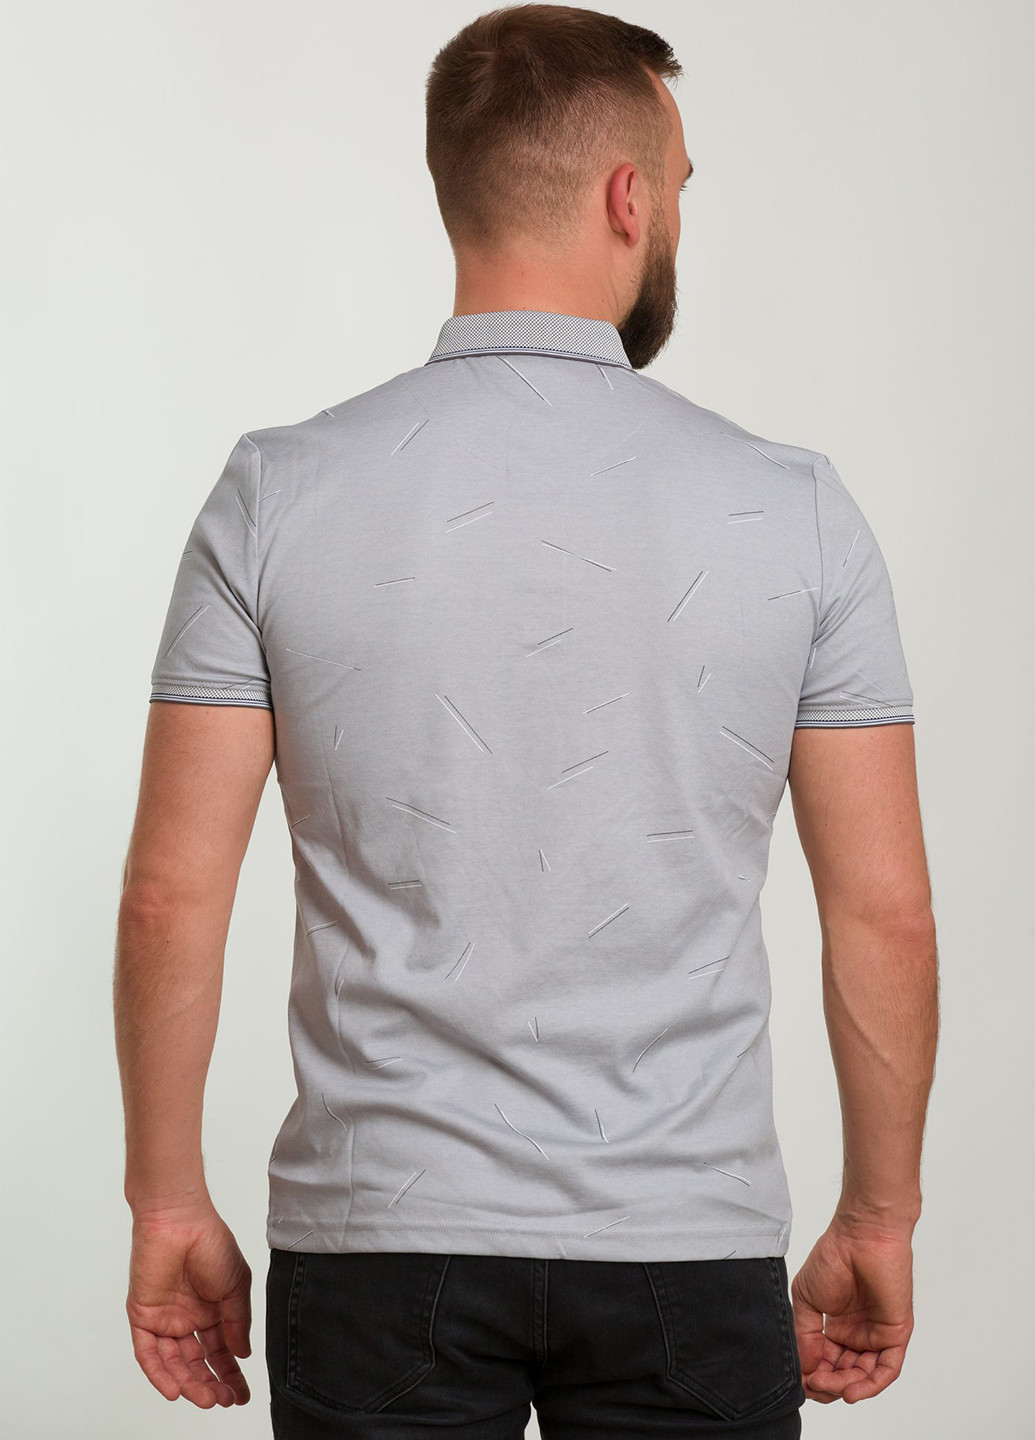 Серая футболка-поло для мужчин Trend Collection с рисунком